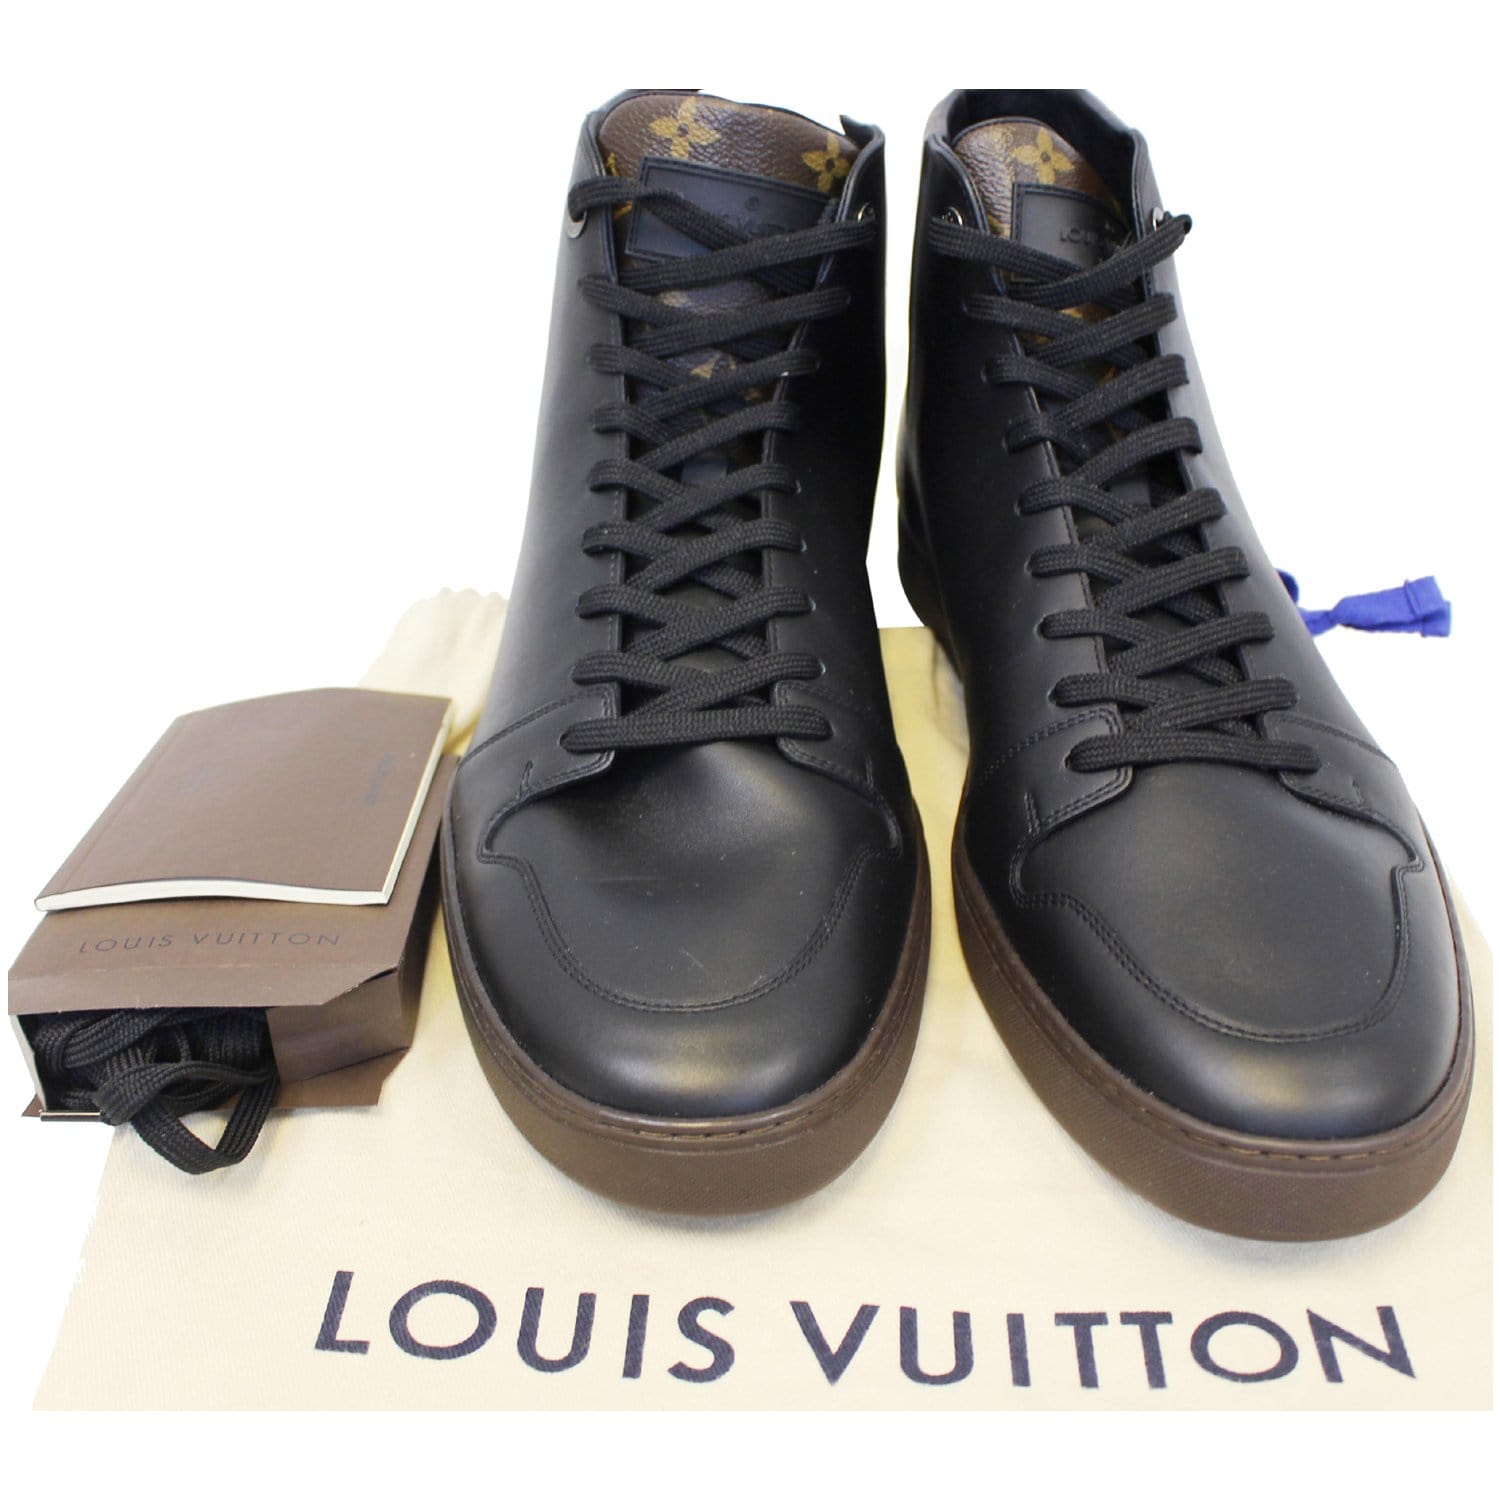 Túi Louis Vuitton Size to rep 1:1 chính hãng màu nâu dây xanh giá tốt